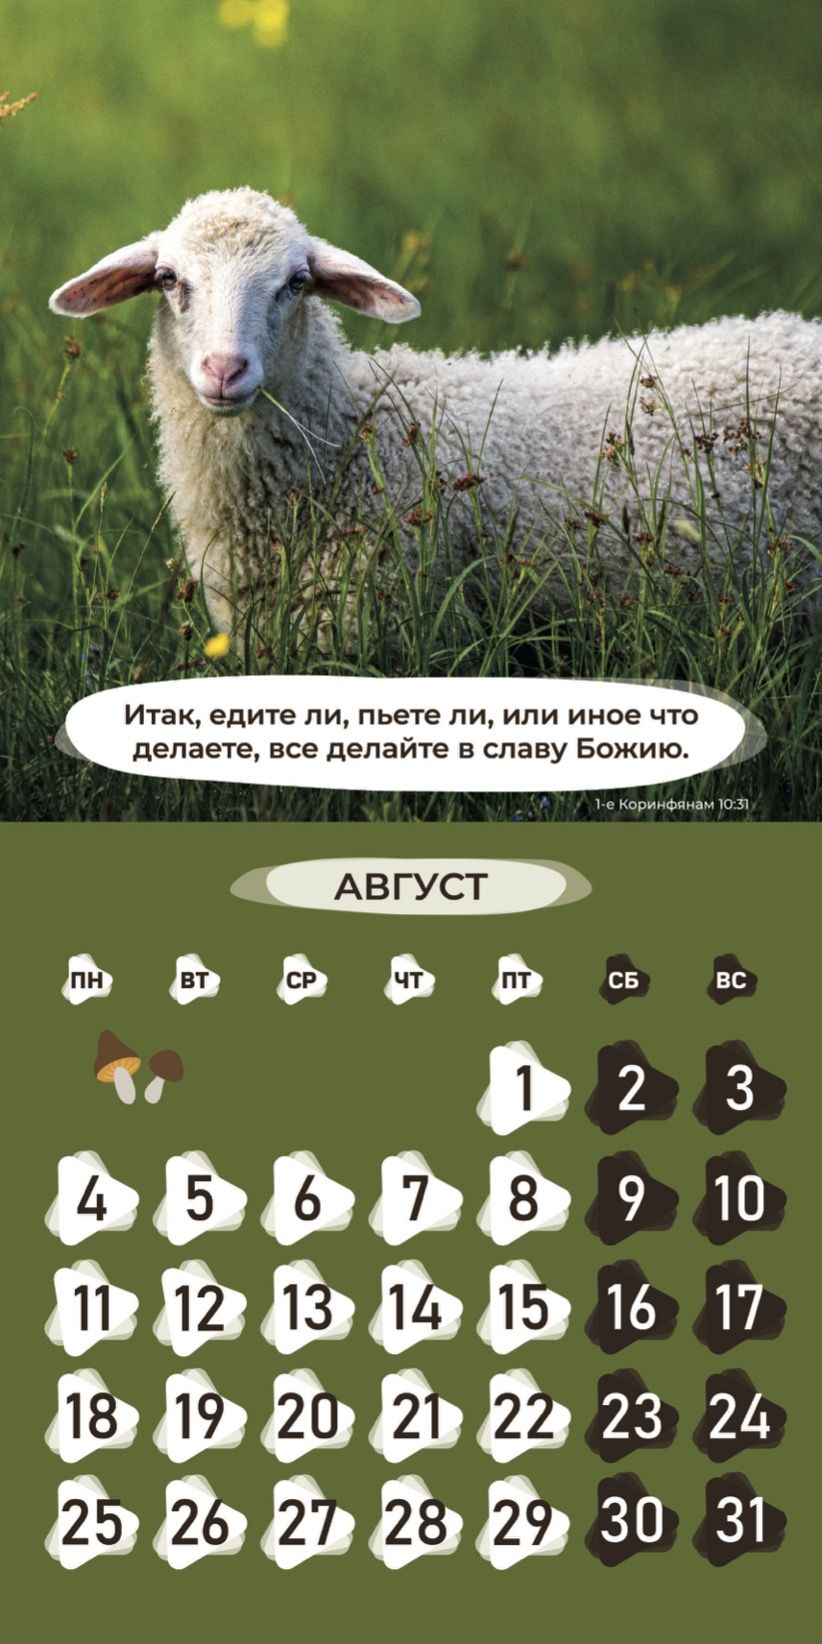 Календарь перекидной на скобе Детский "Забавные животные" (изображение зверей и цитаты из библии)  на 29*29 см на 2025 на 12 листах